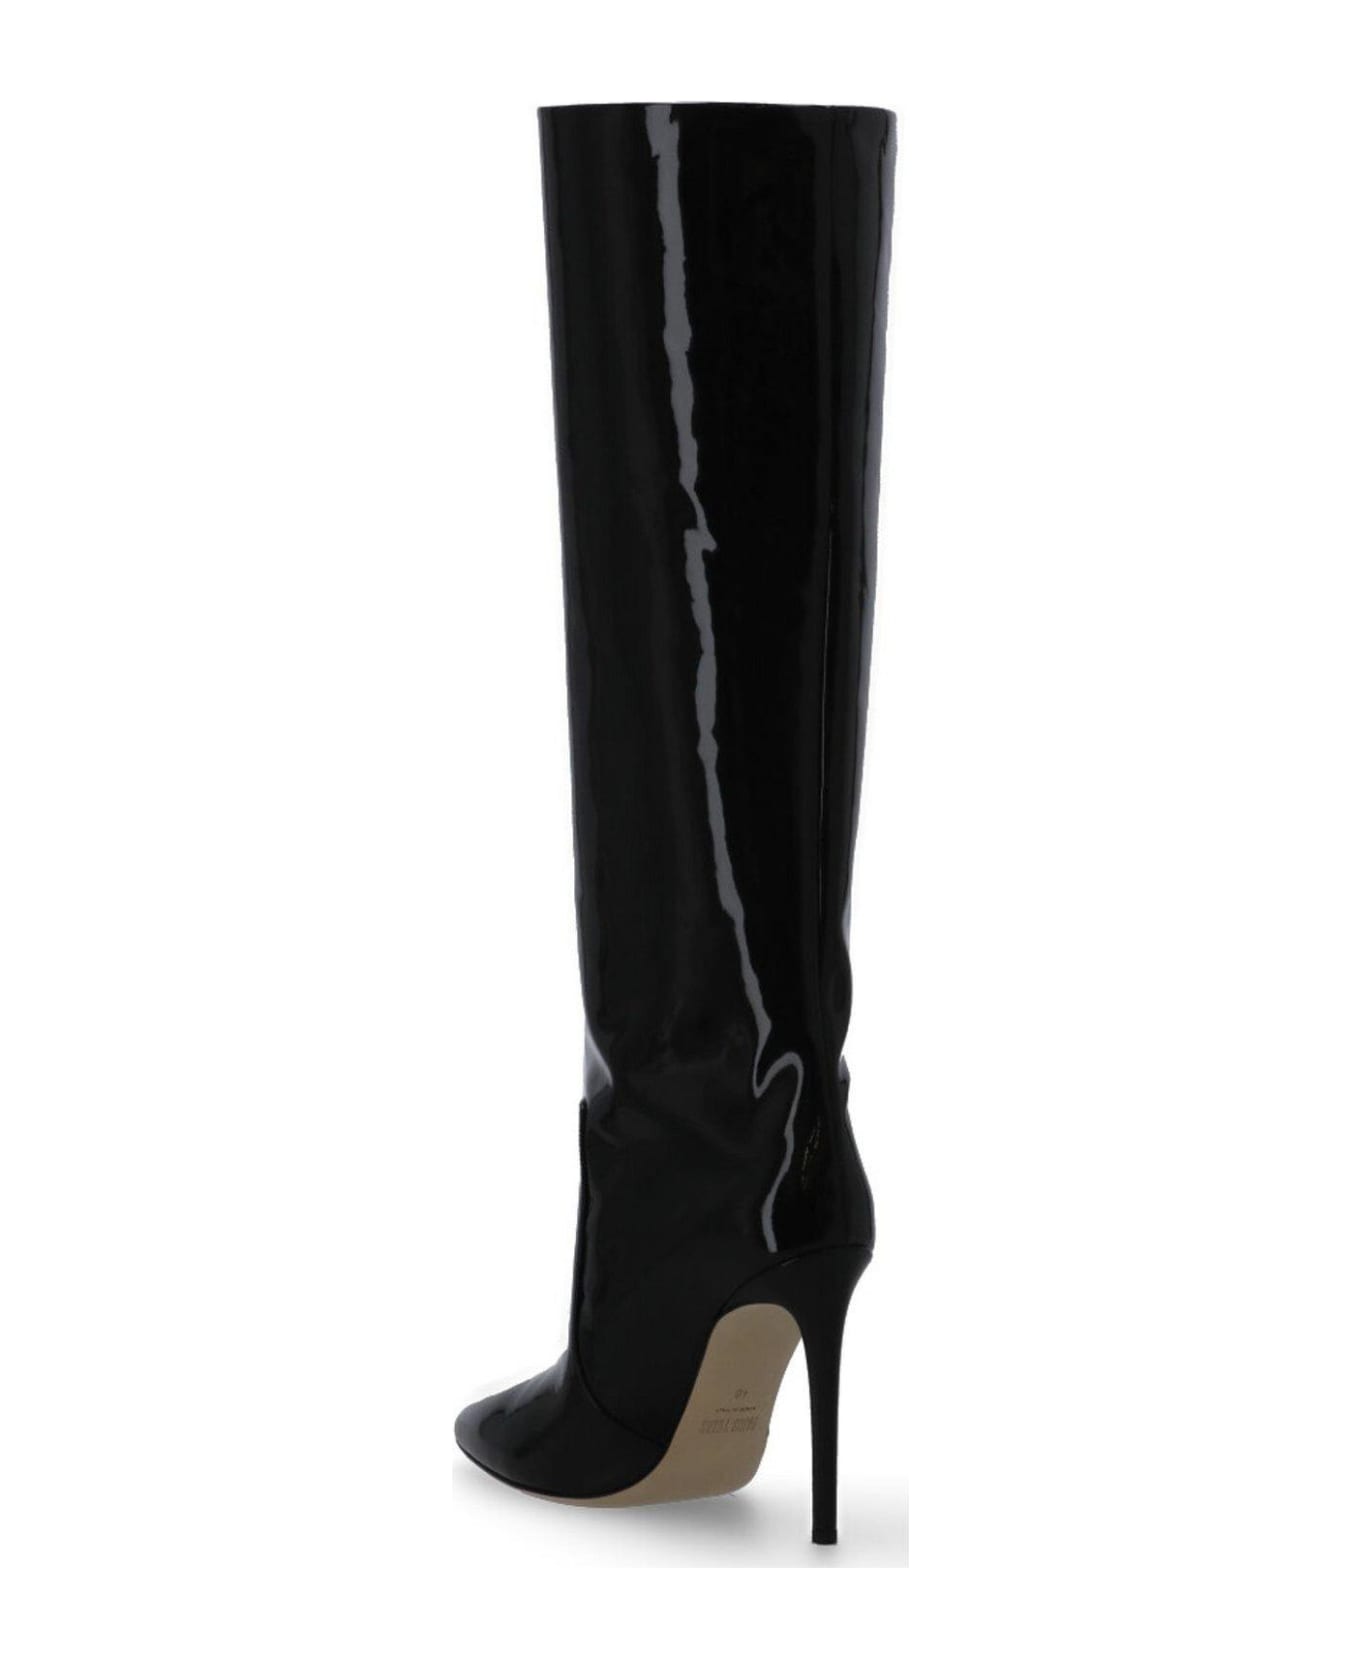 Paris Texas Stiletto Pointed Toe Boots - Nero